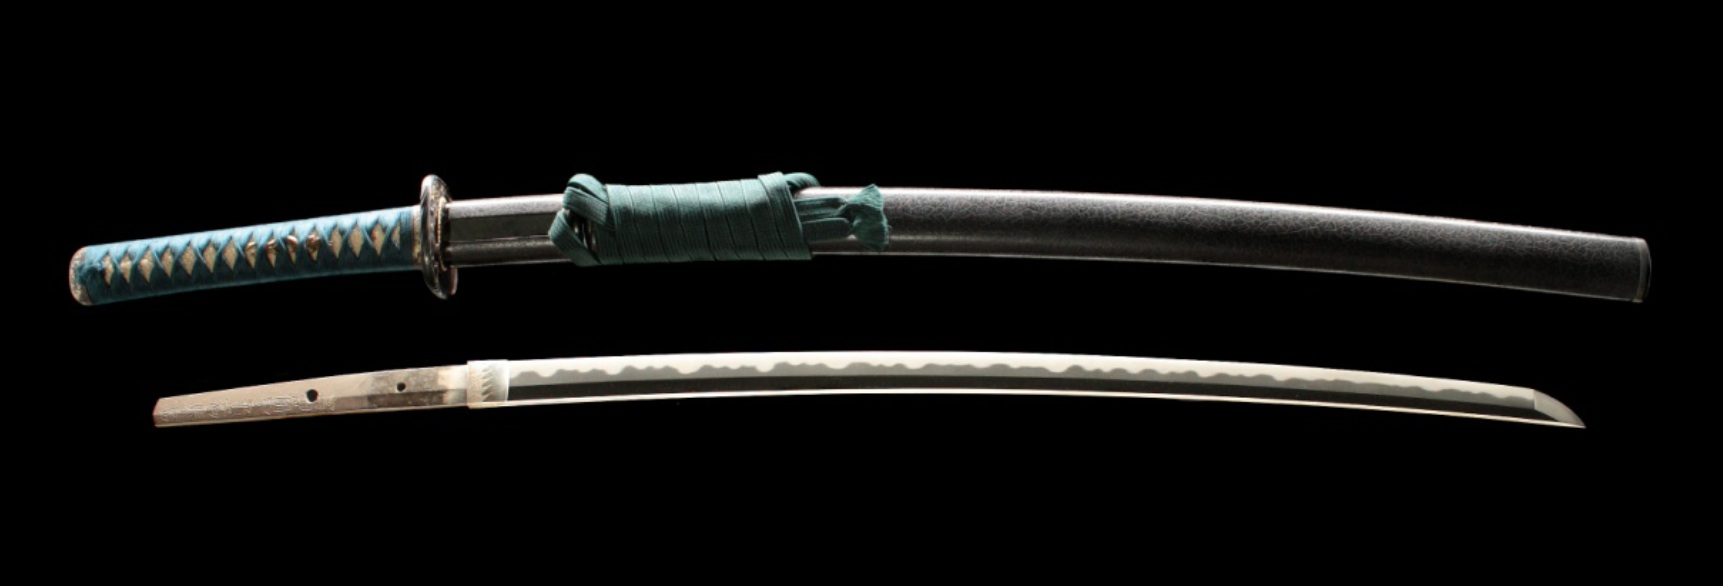 authentic katana sword